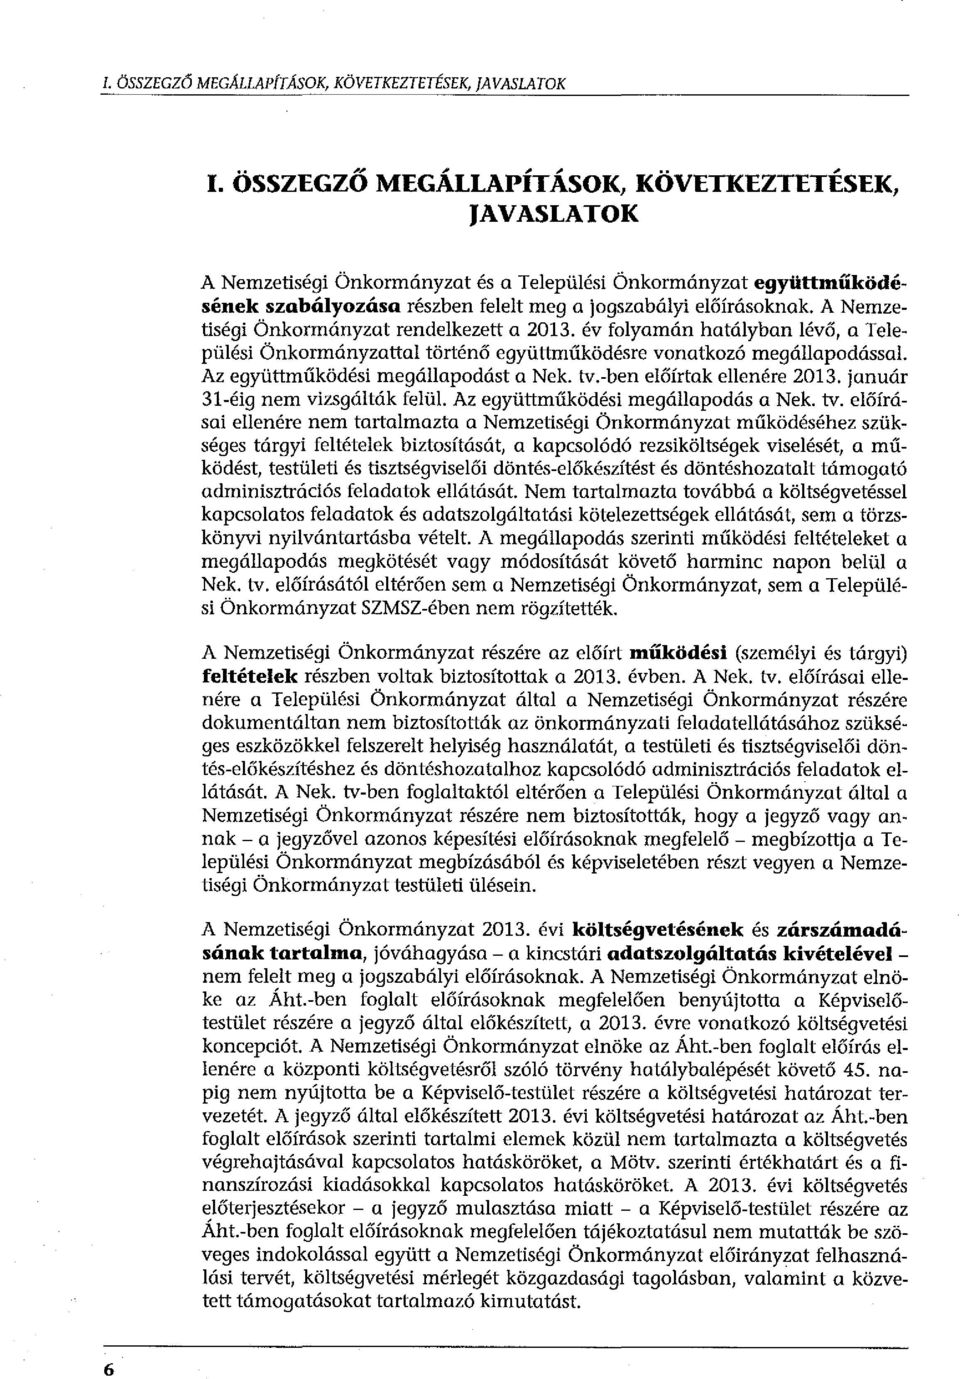 A Nemzetiségi Önkormányzat rendelkezett a 2013. év folyamán hatályban lévő, a Települési Önkormányzattal történő együttműködésre vonatkozó megállapodással Az együttműködési megállapodást a Nek. tv.